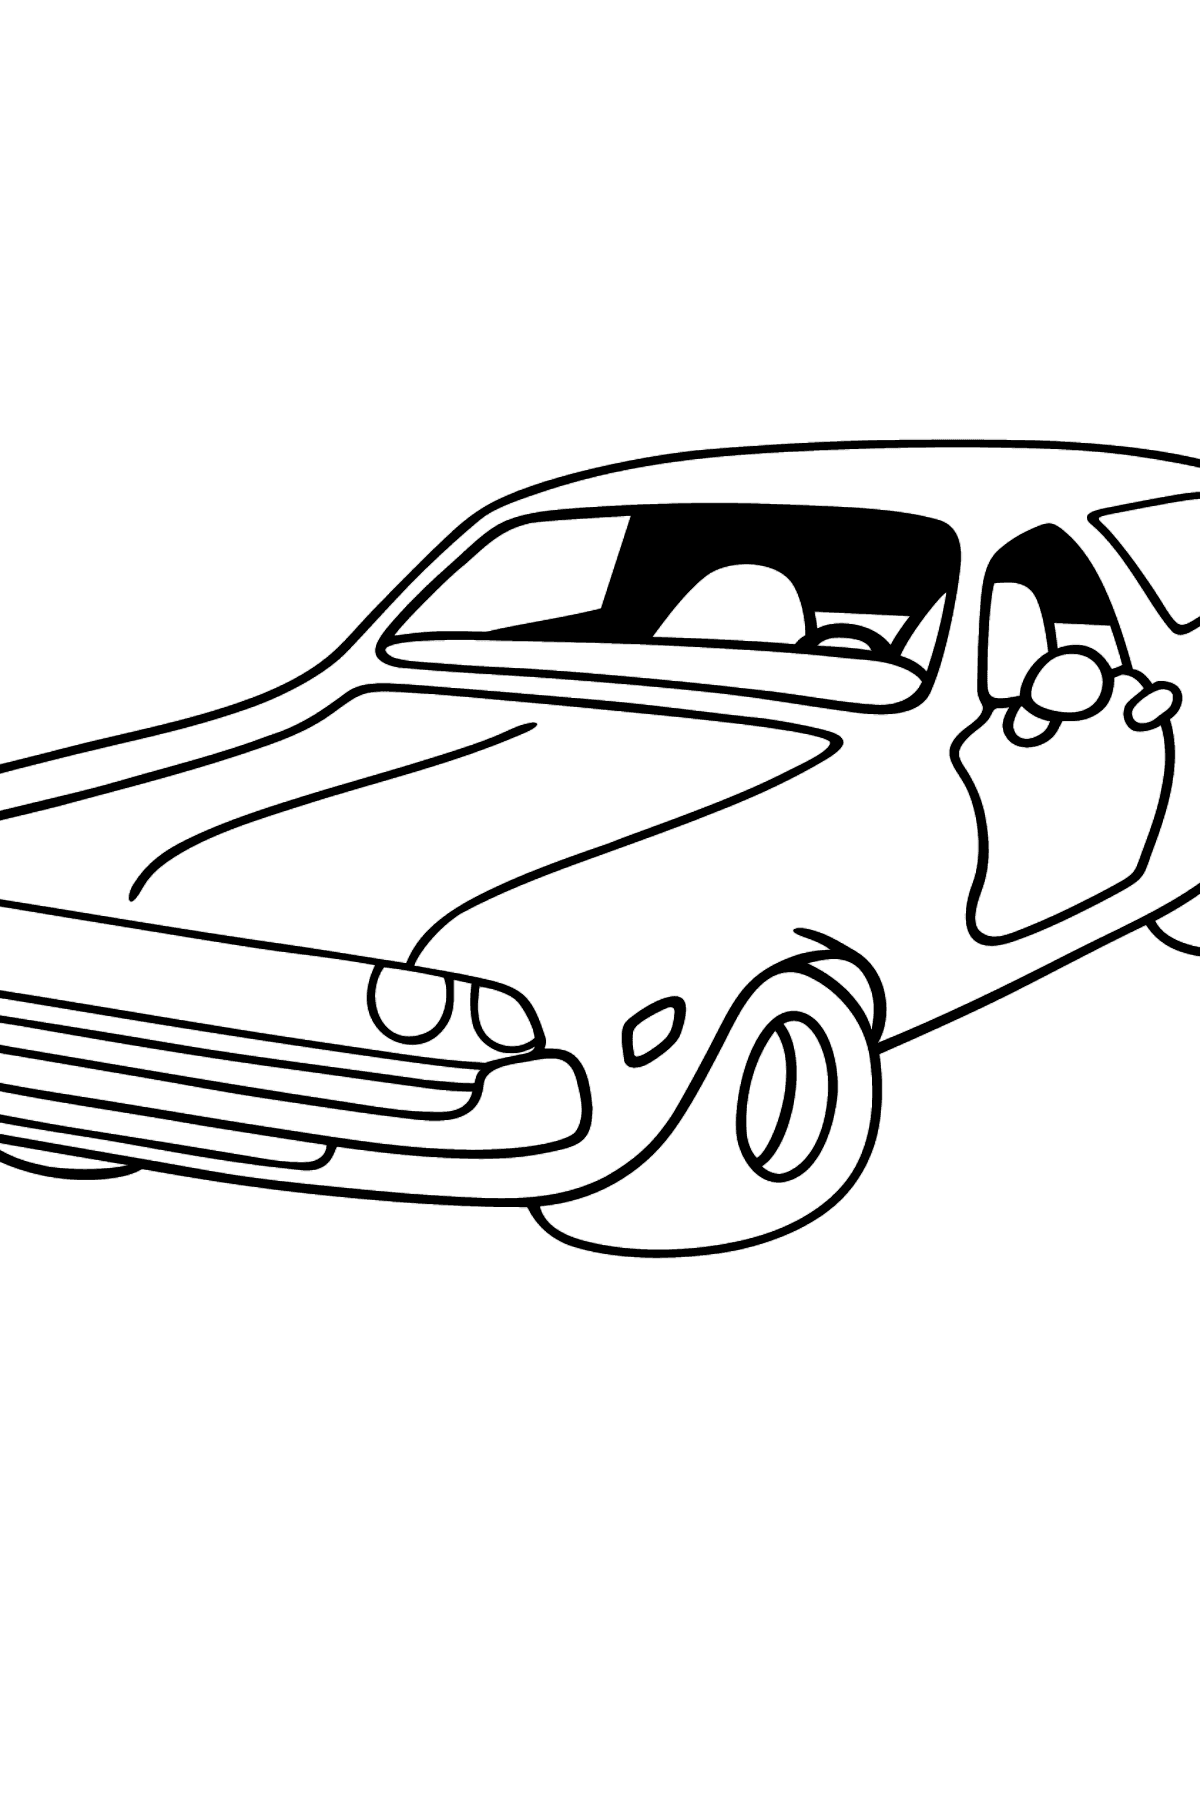 Dibujo de coche Chevrolet para colorear - Dibujos para Colorear para Niños